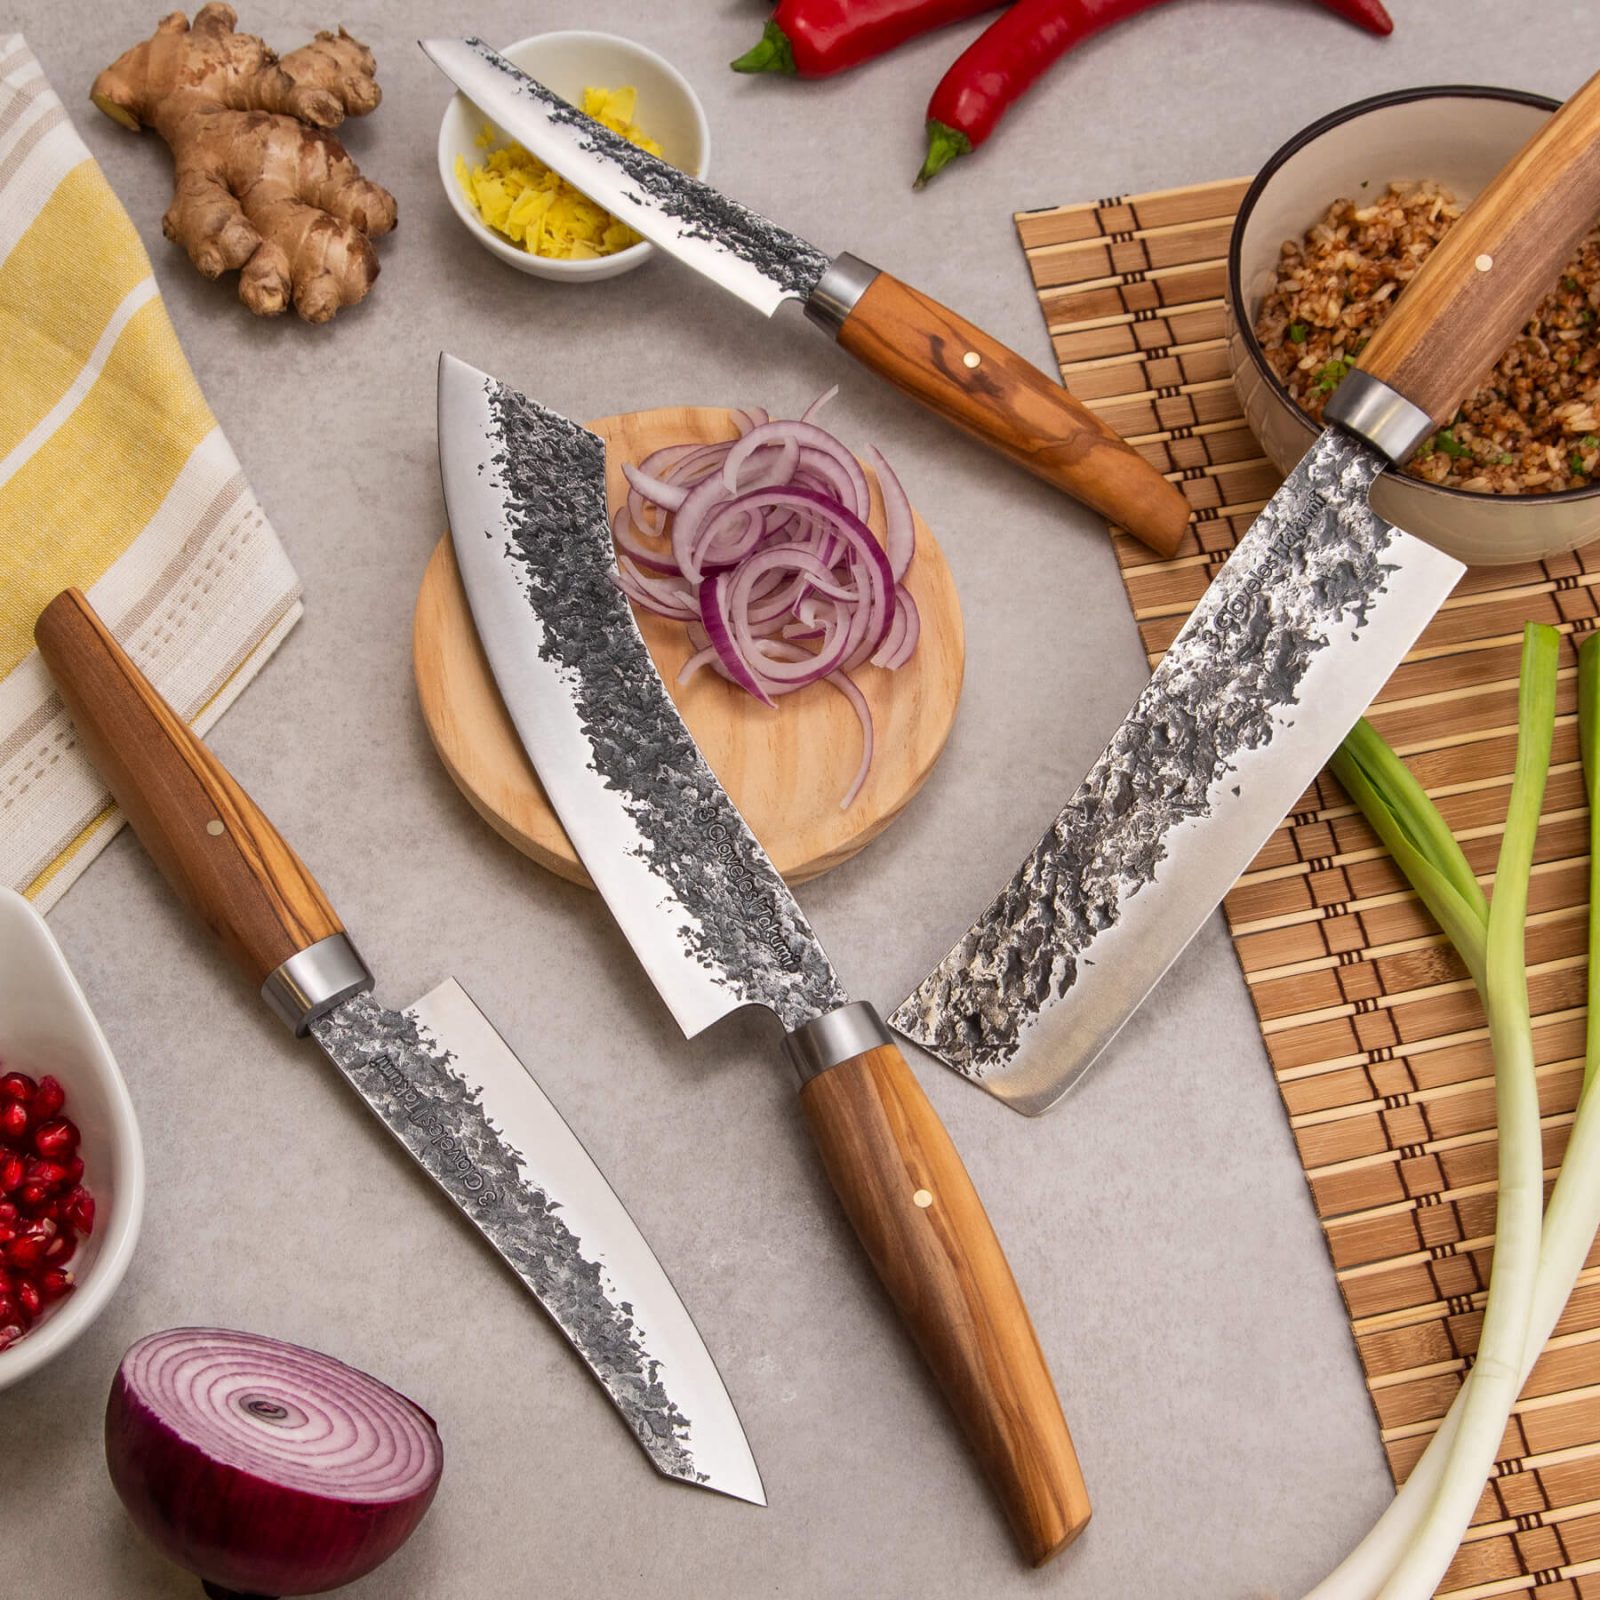 3 Claveles: Fabricantes de cuchillería profesional desde 1930